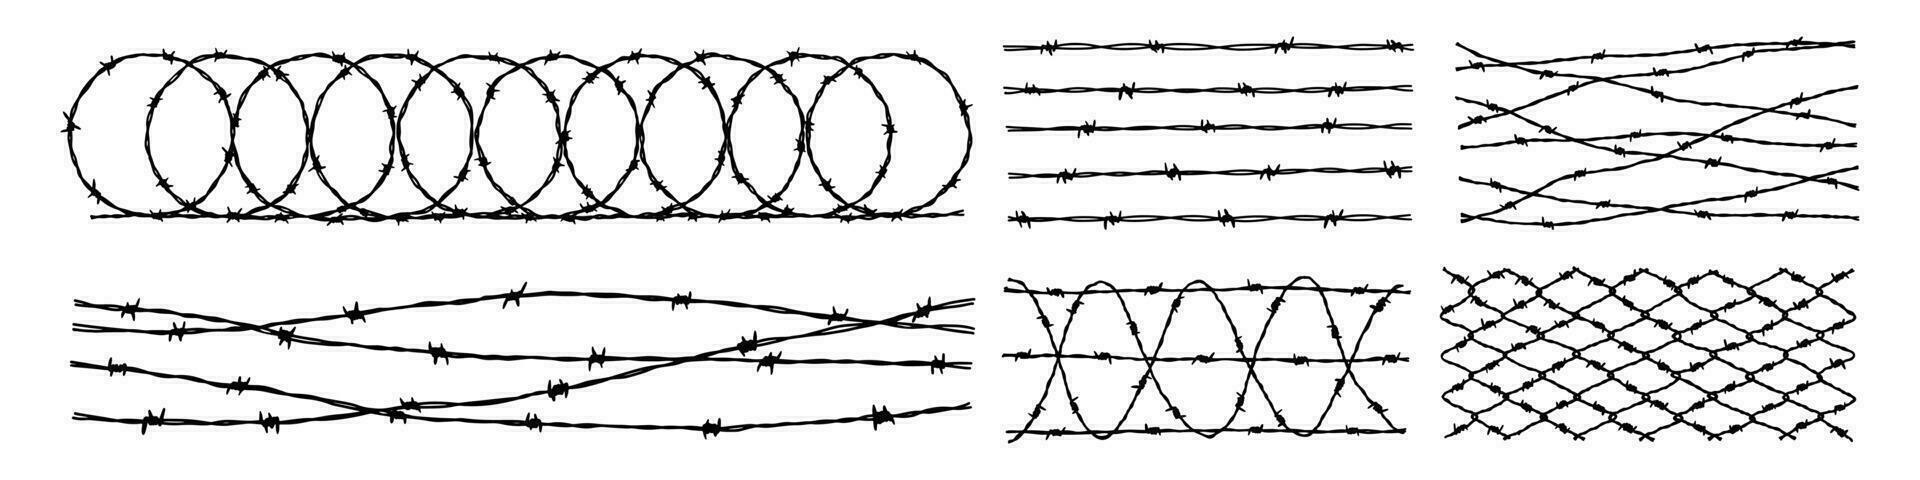 Reihe von Stacheldrahtzaunhintergründen. hand gezeichnete vektorillustration im skizzenstil. gestaltungselement für militär-, sicherheits-, gefängnis-, sklavereikonzepte vektor